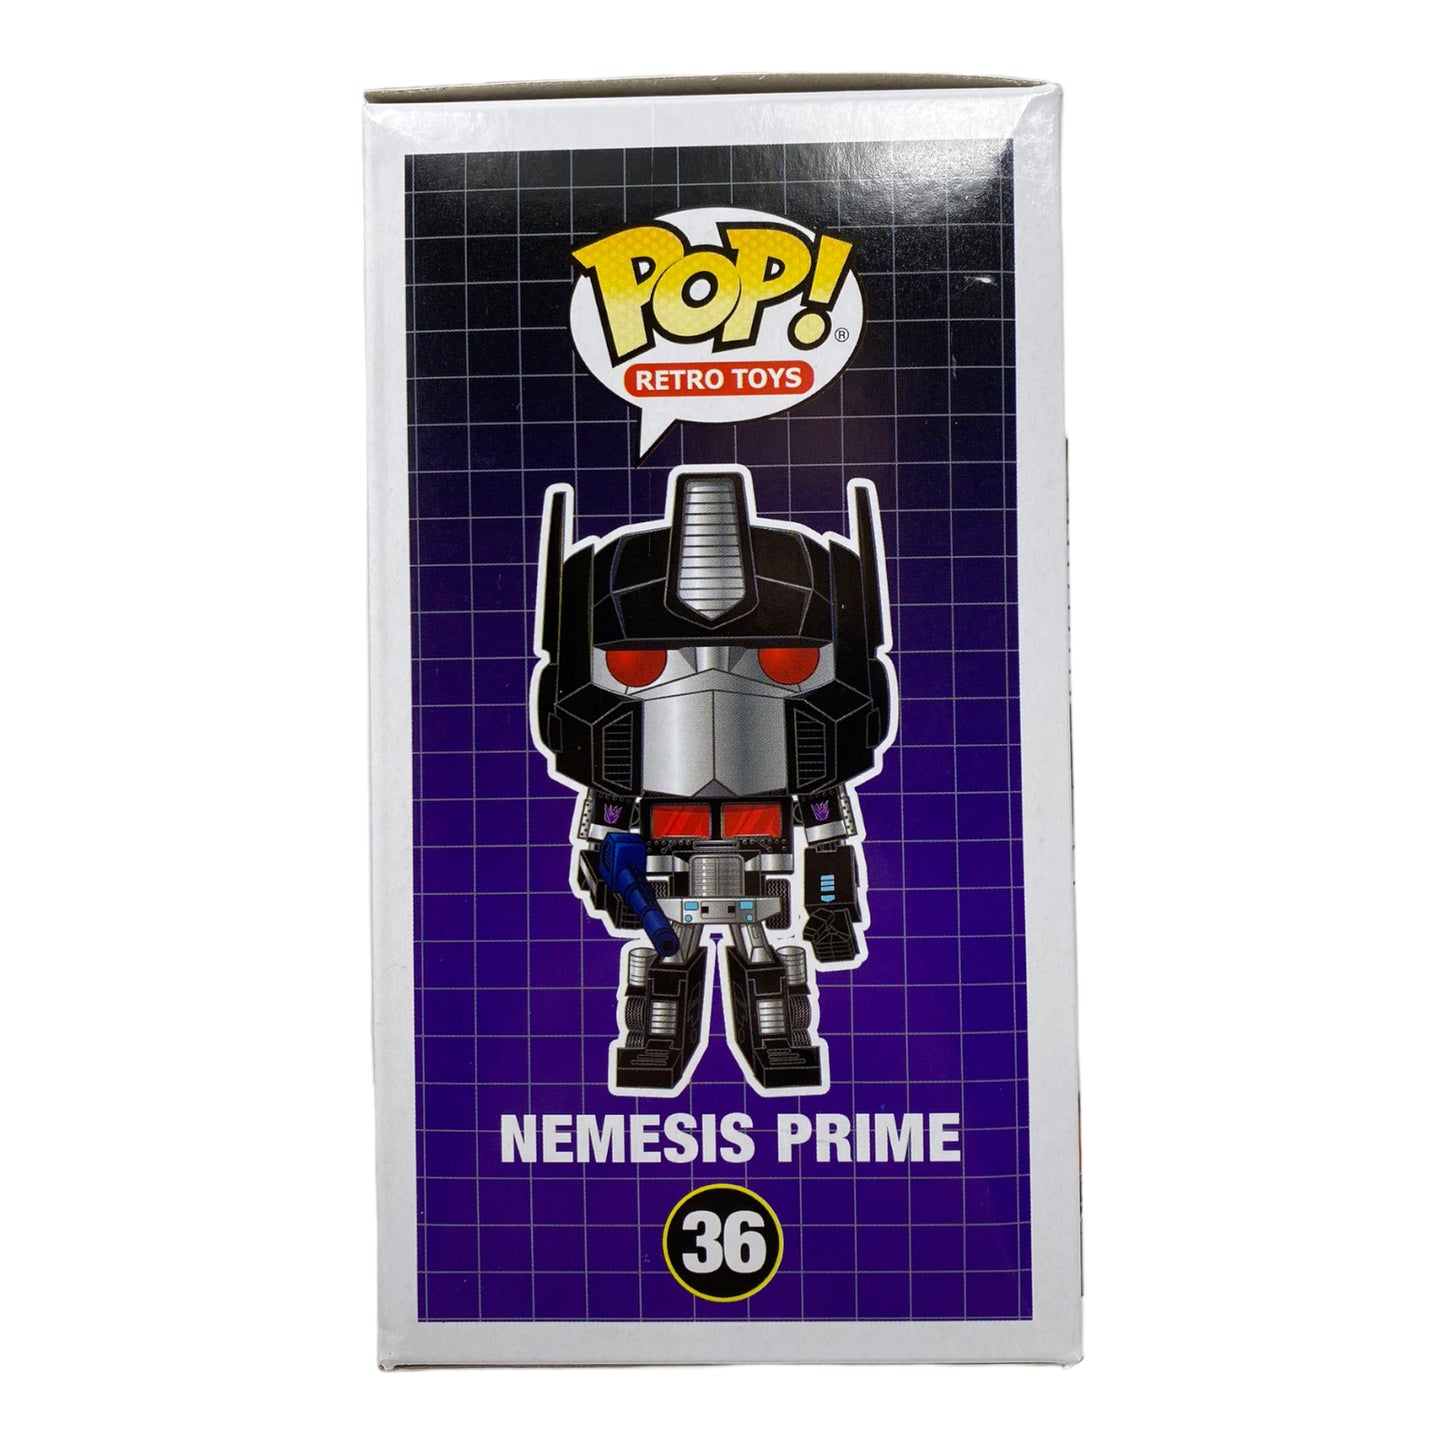 2015 Nemesis Prime 36 Funko Shop Limited